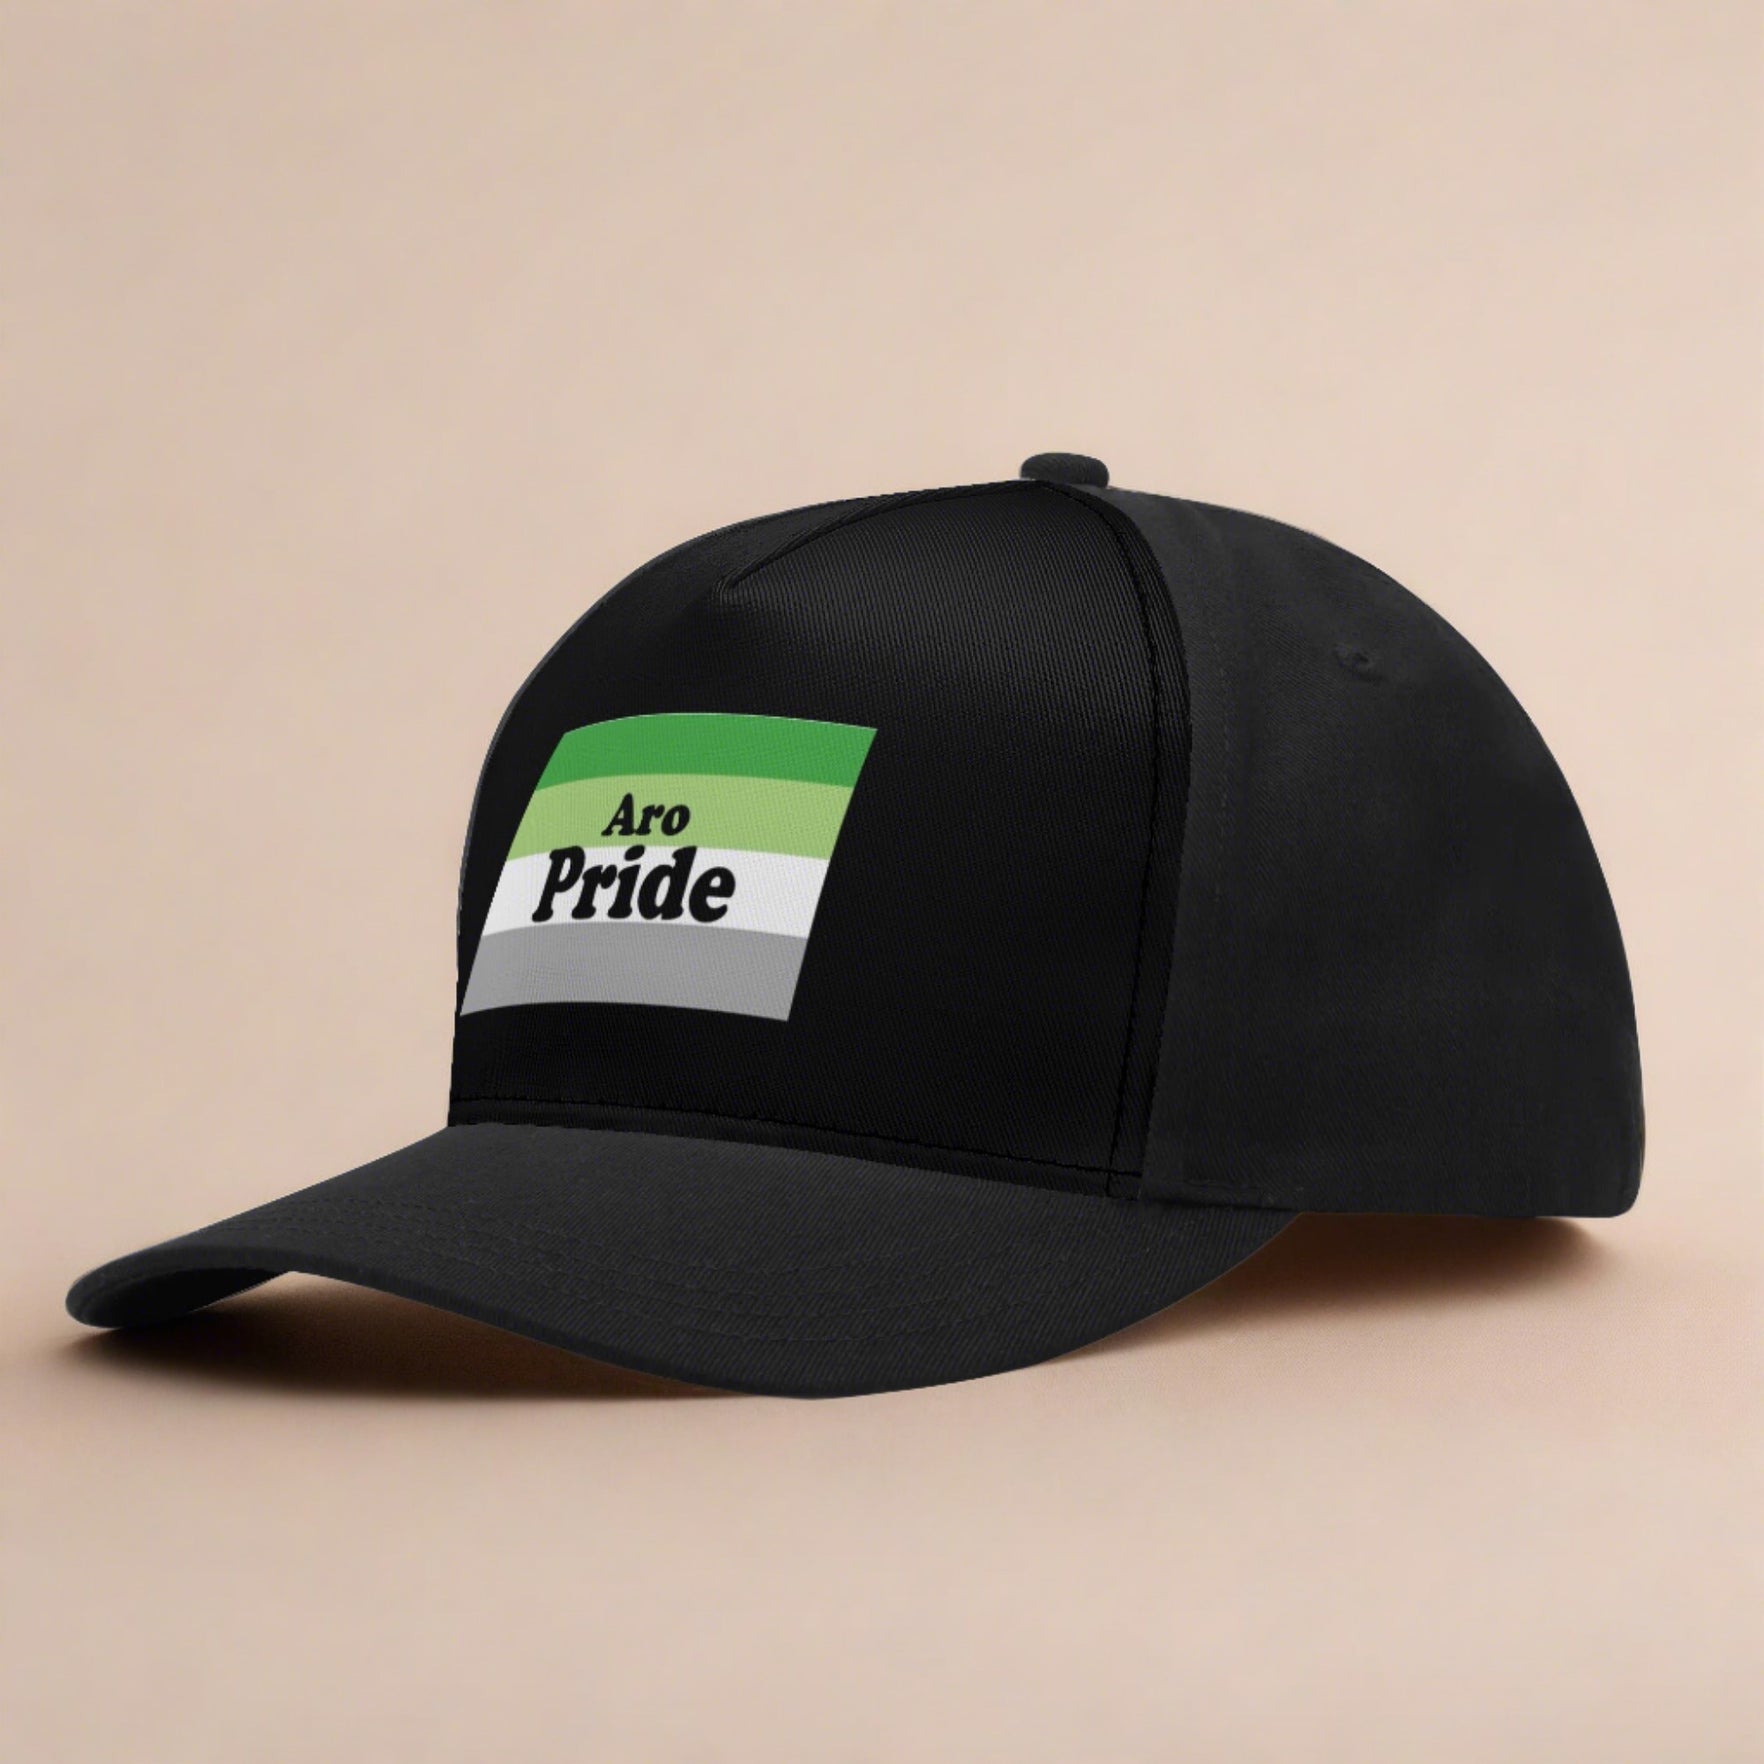 Aro Pride Printed Baseball Cap